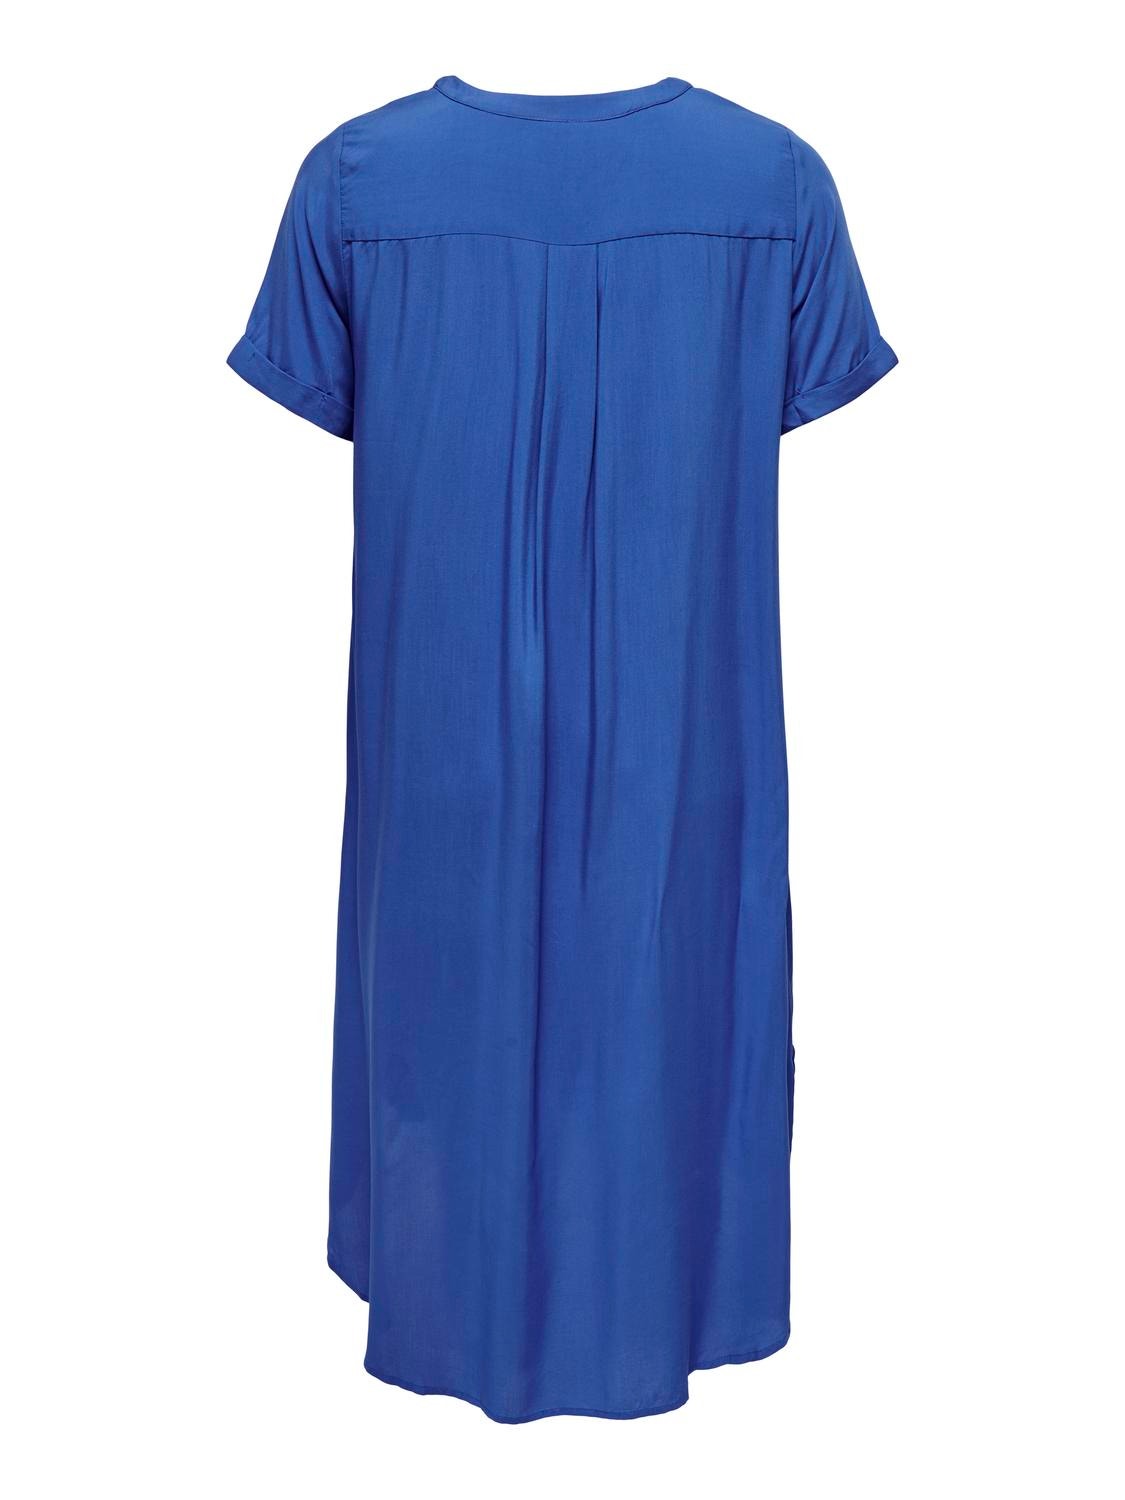 ONLY Holgado en tallas grandes Vestido camisero -Dazzling Blue - 15226675